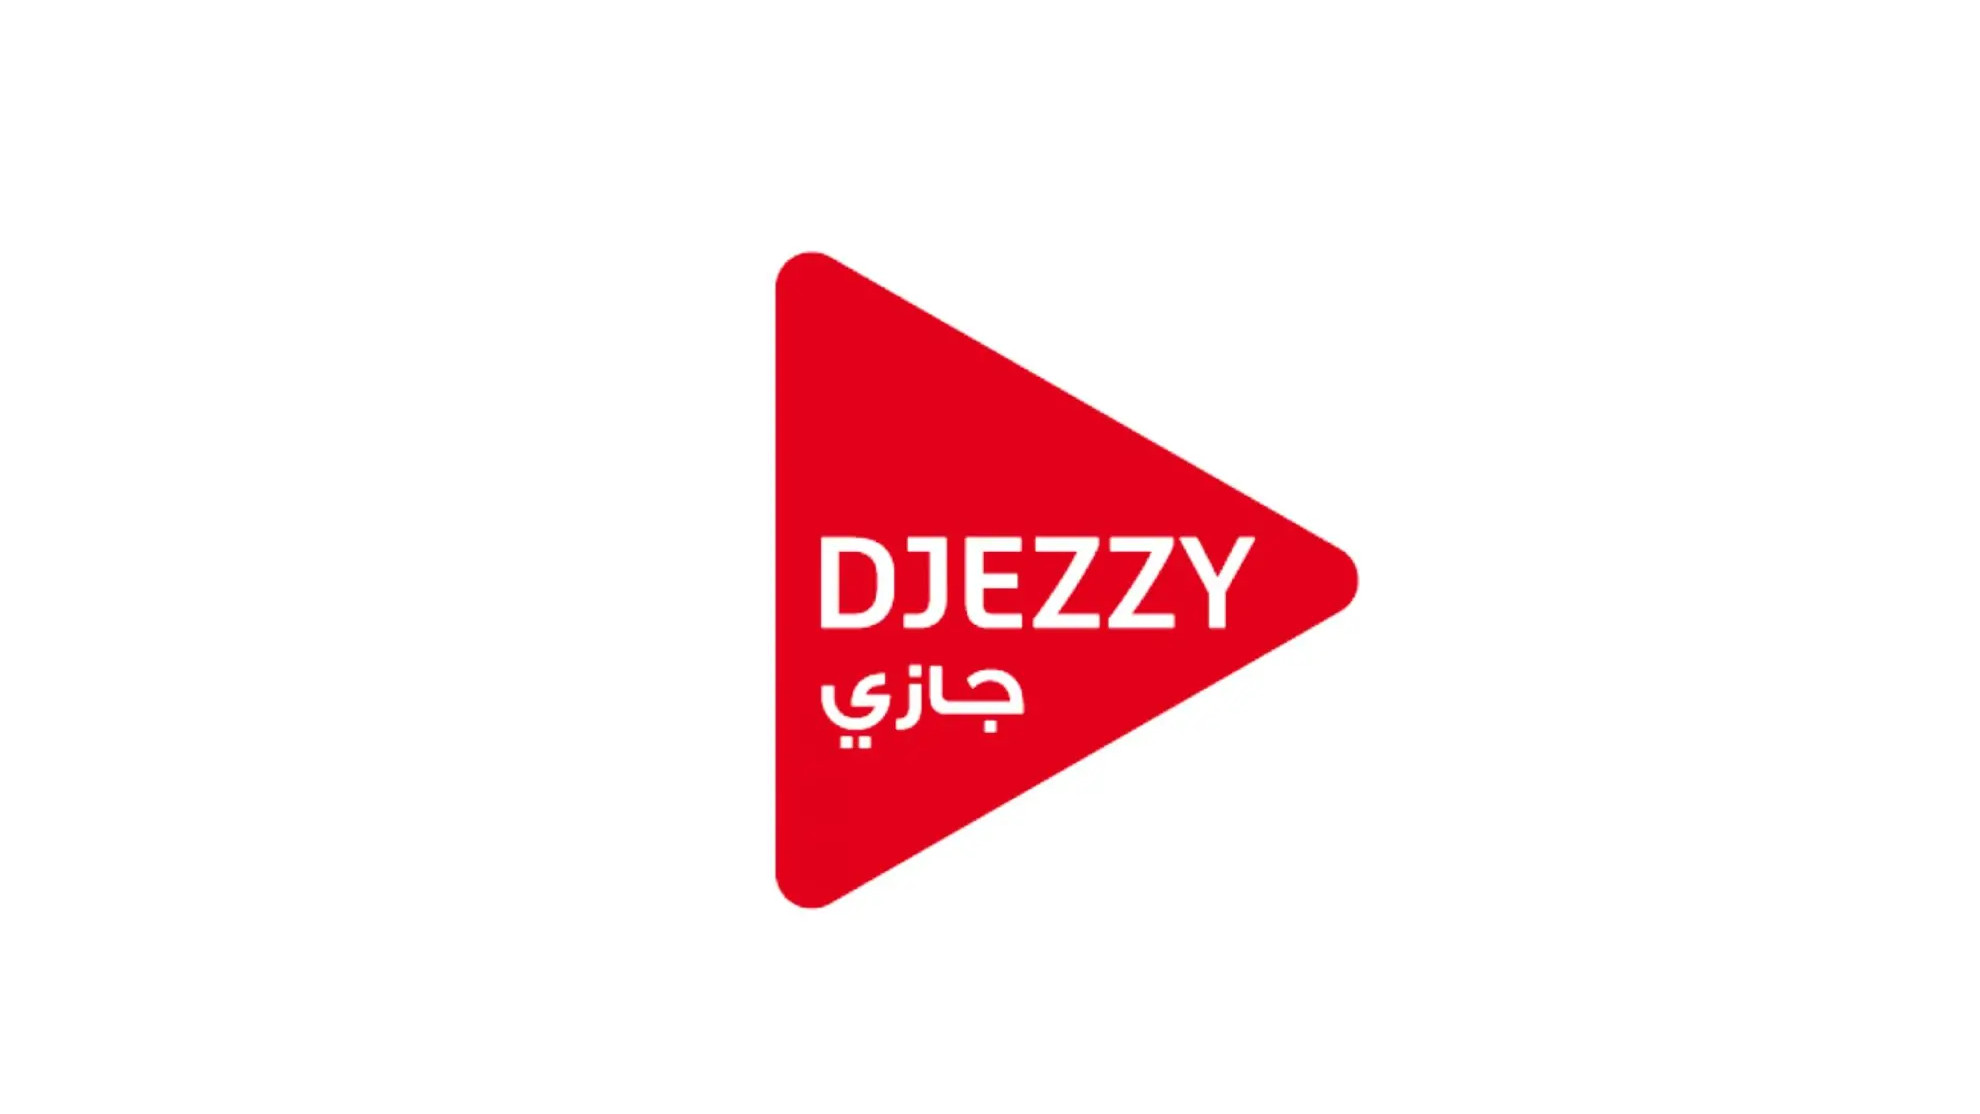 Djezzy 100 DZD Mobile Top-up DZ, 1.36 usd